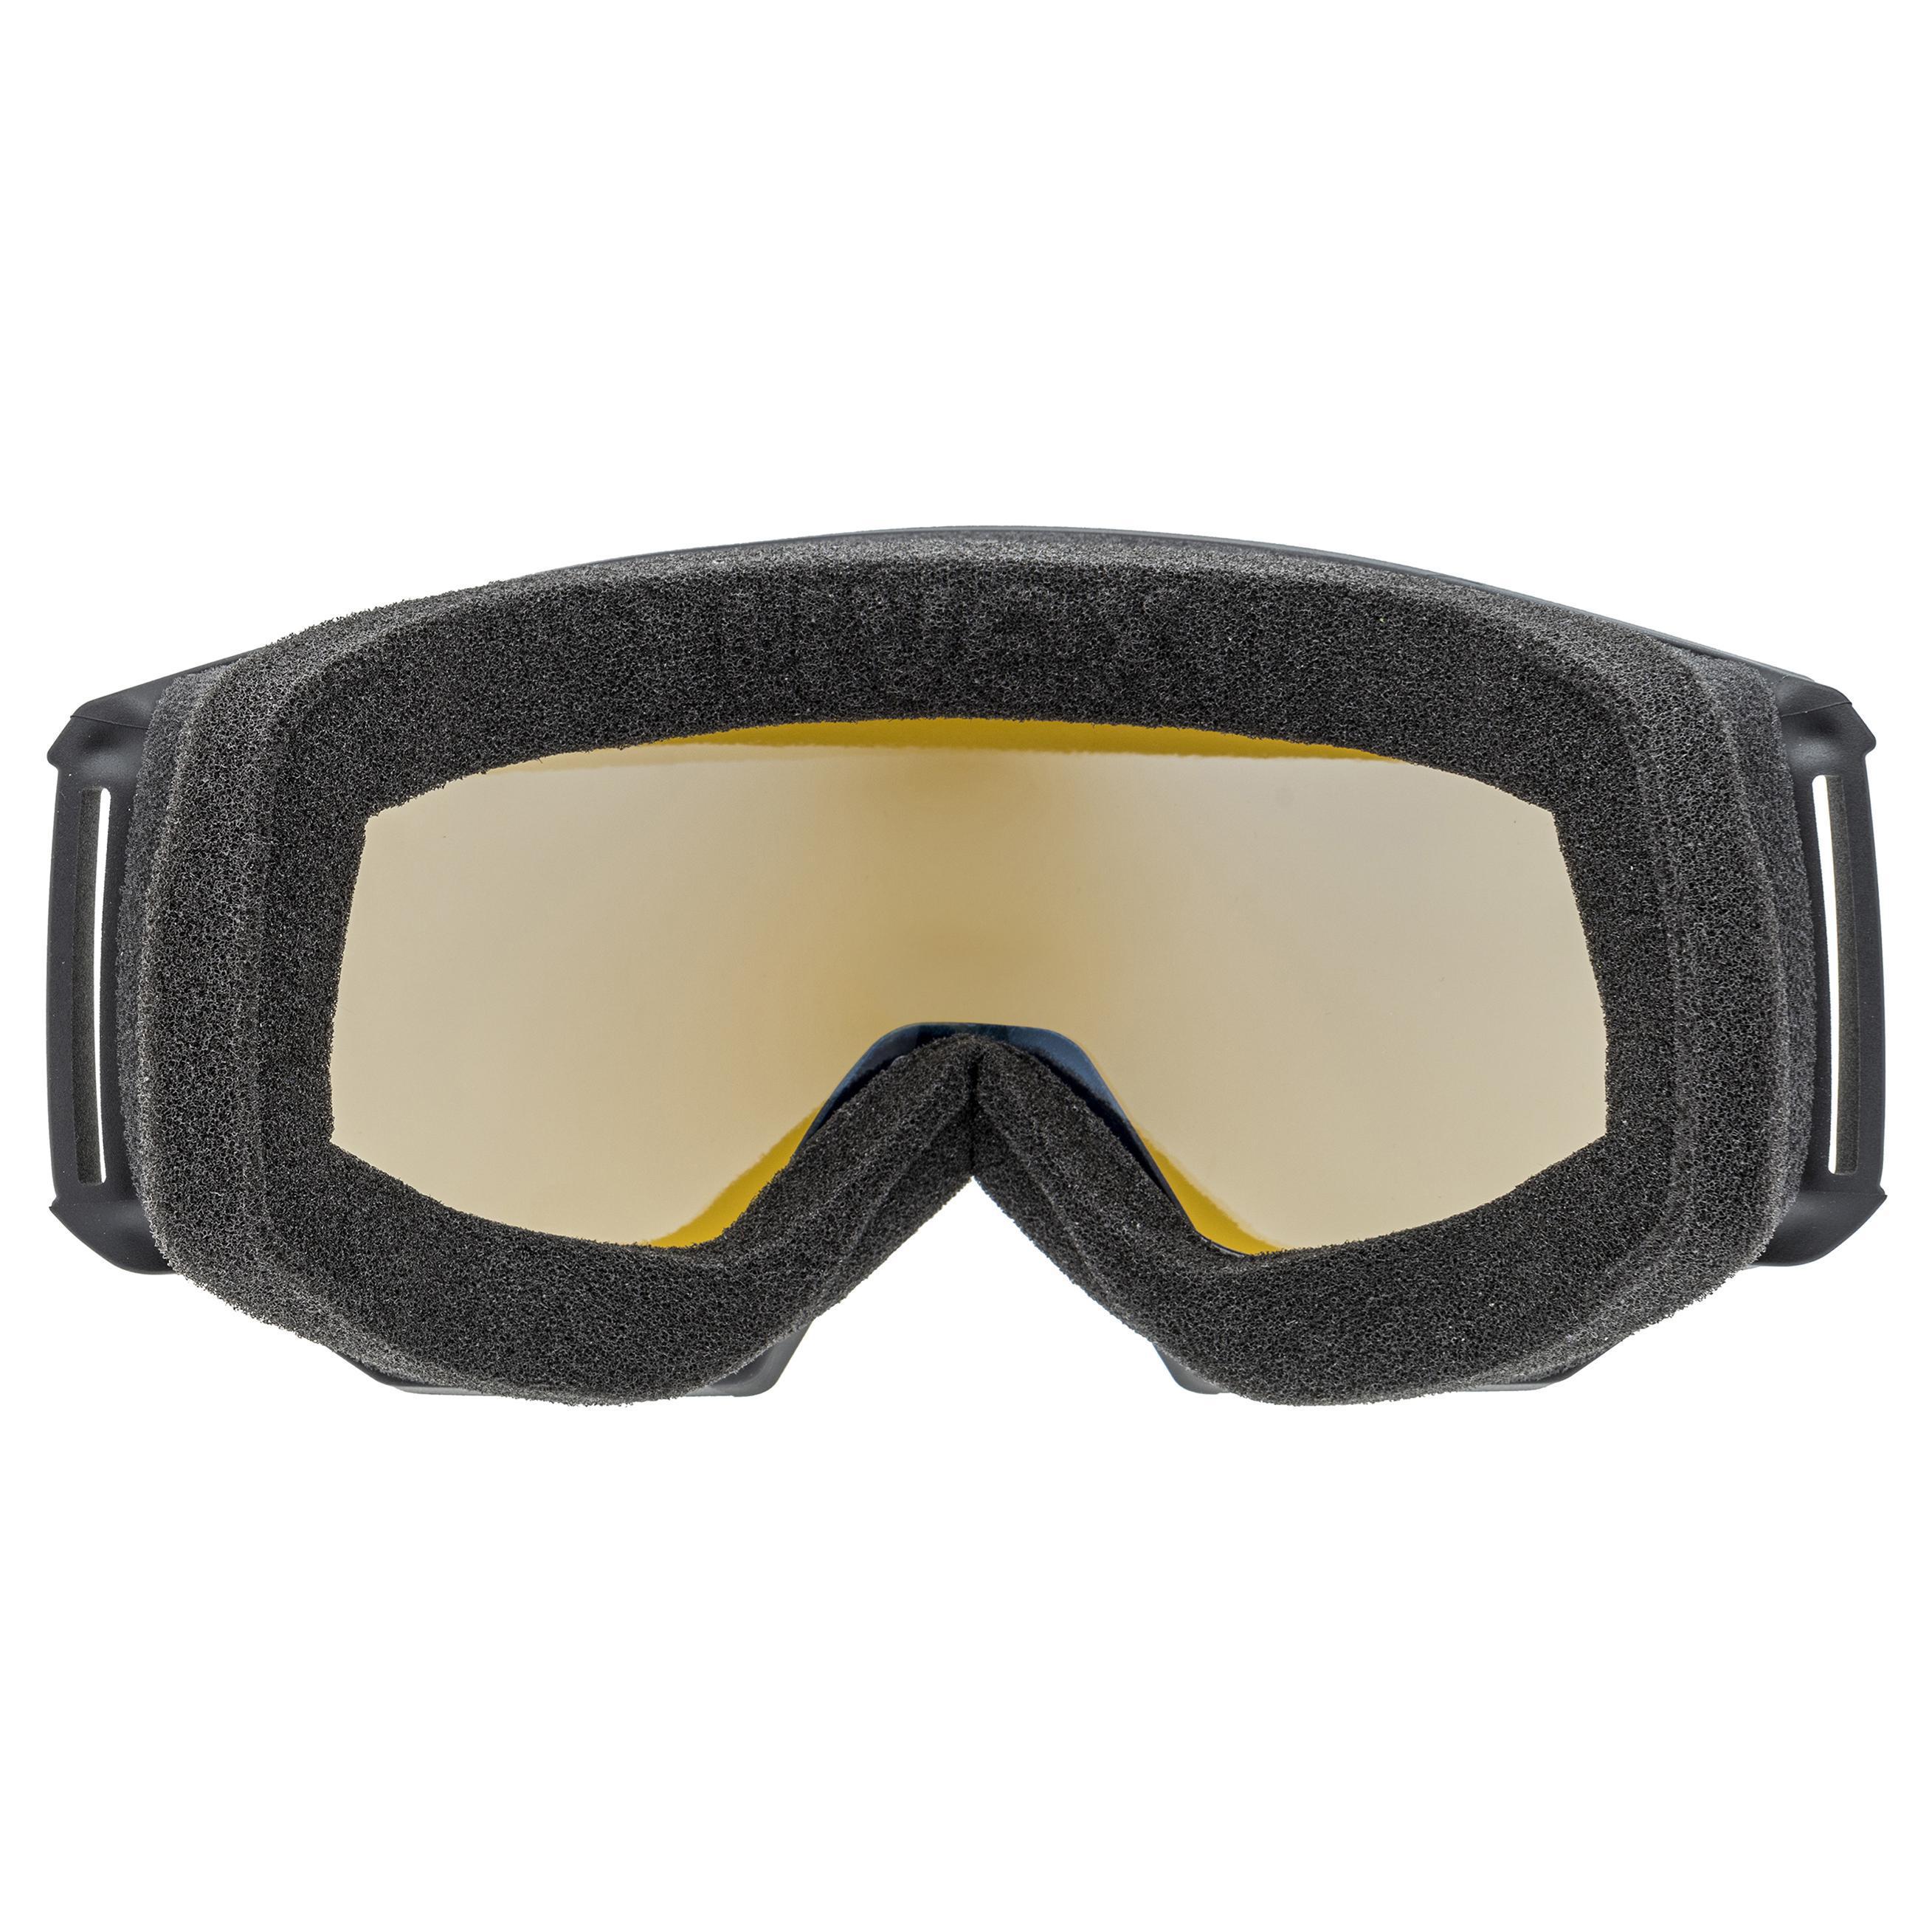 UVEX athletic lgl ski unisex snowboardbrille nieve Ski gafas s55052222